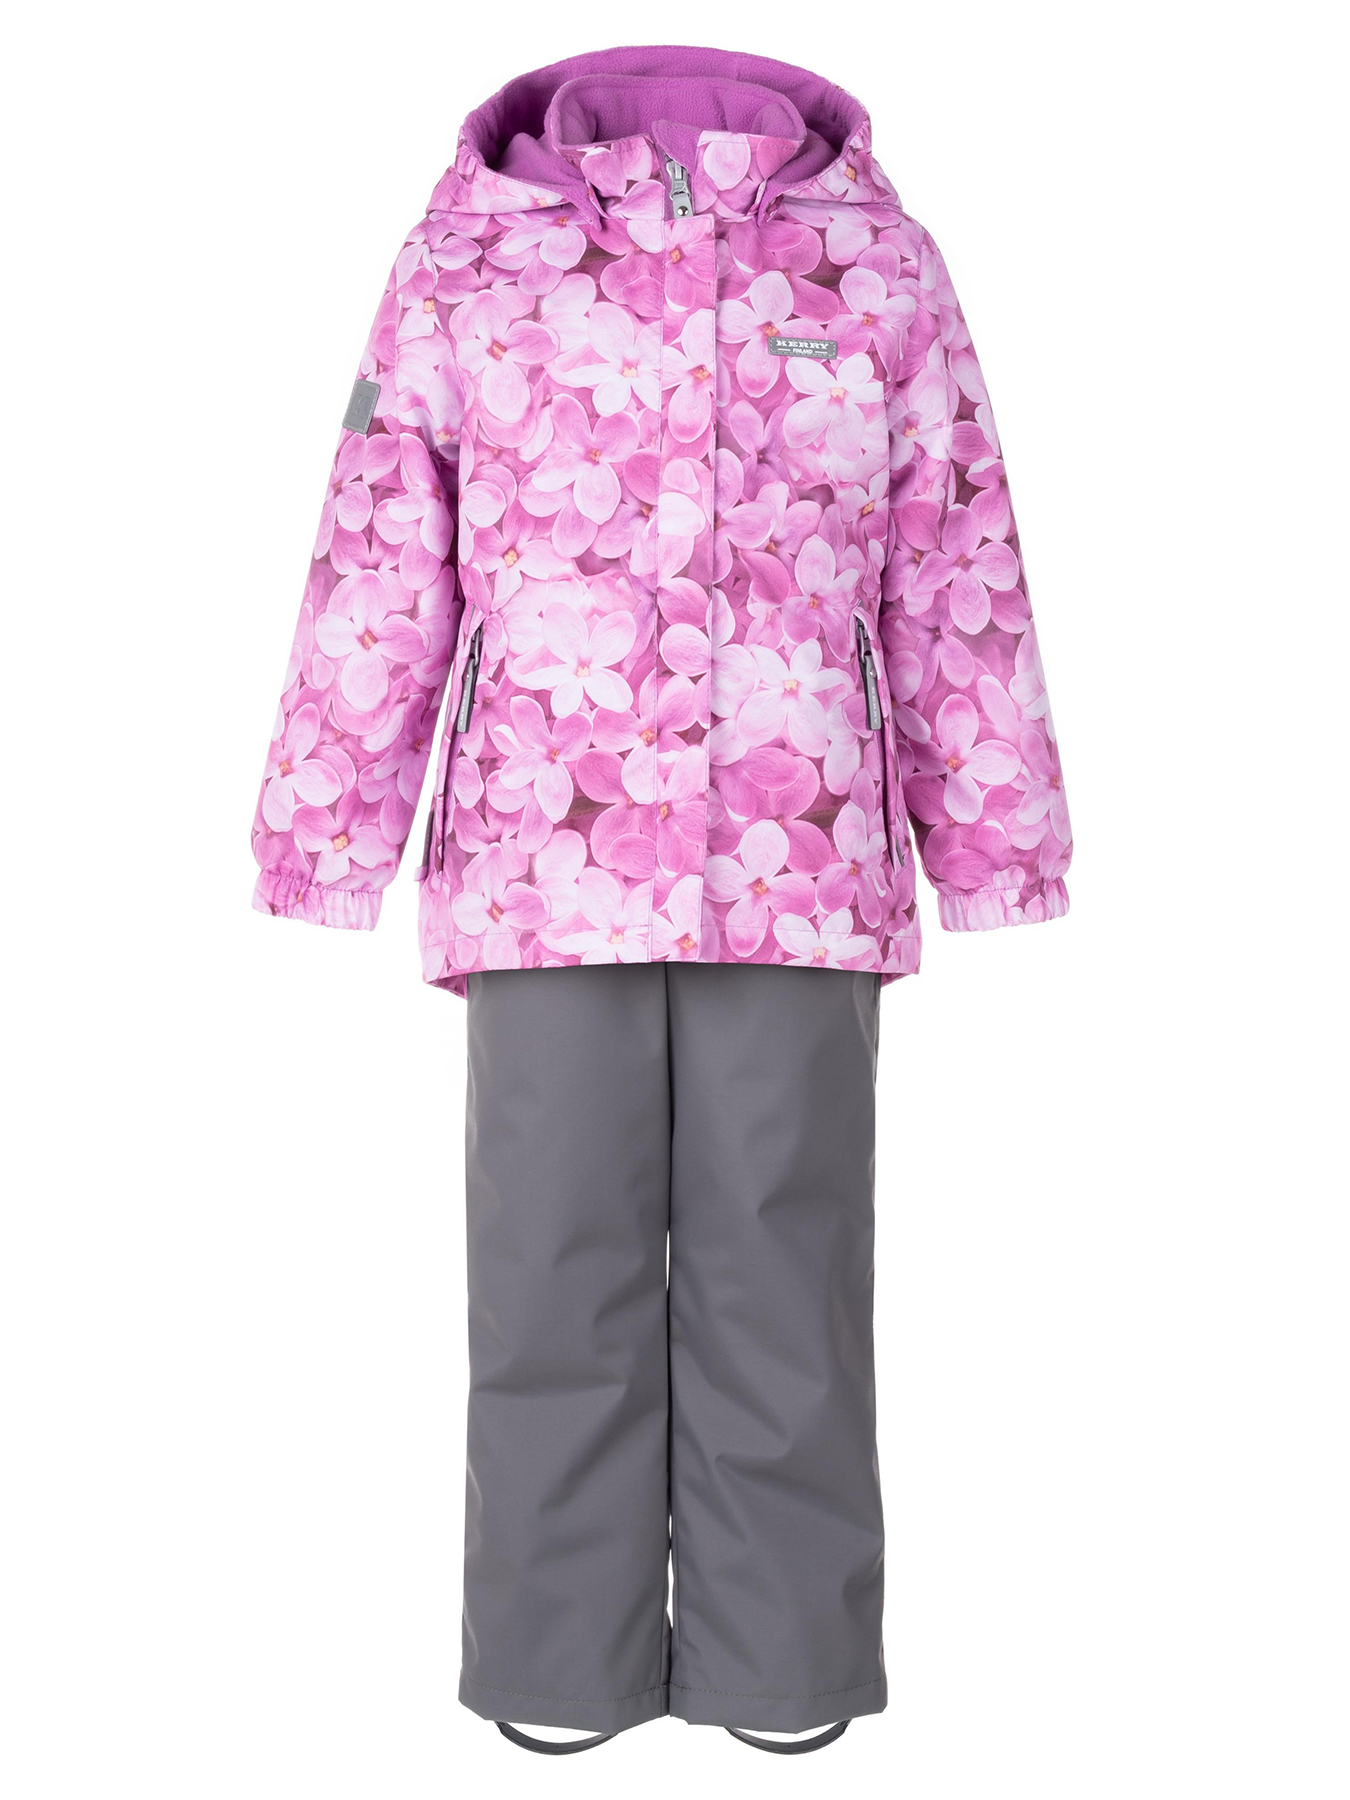 Комплект верхней одежды KERRY HEDVIG K24036A, 1221-сирененвыйс цветами,серый, 110